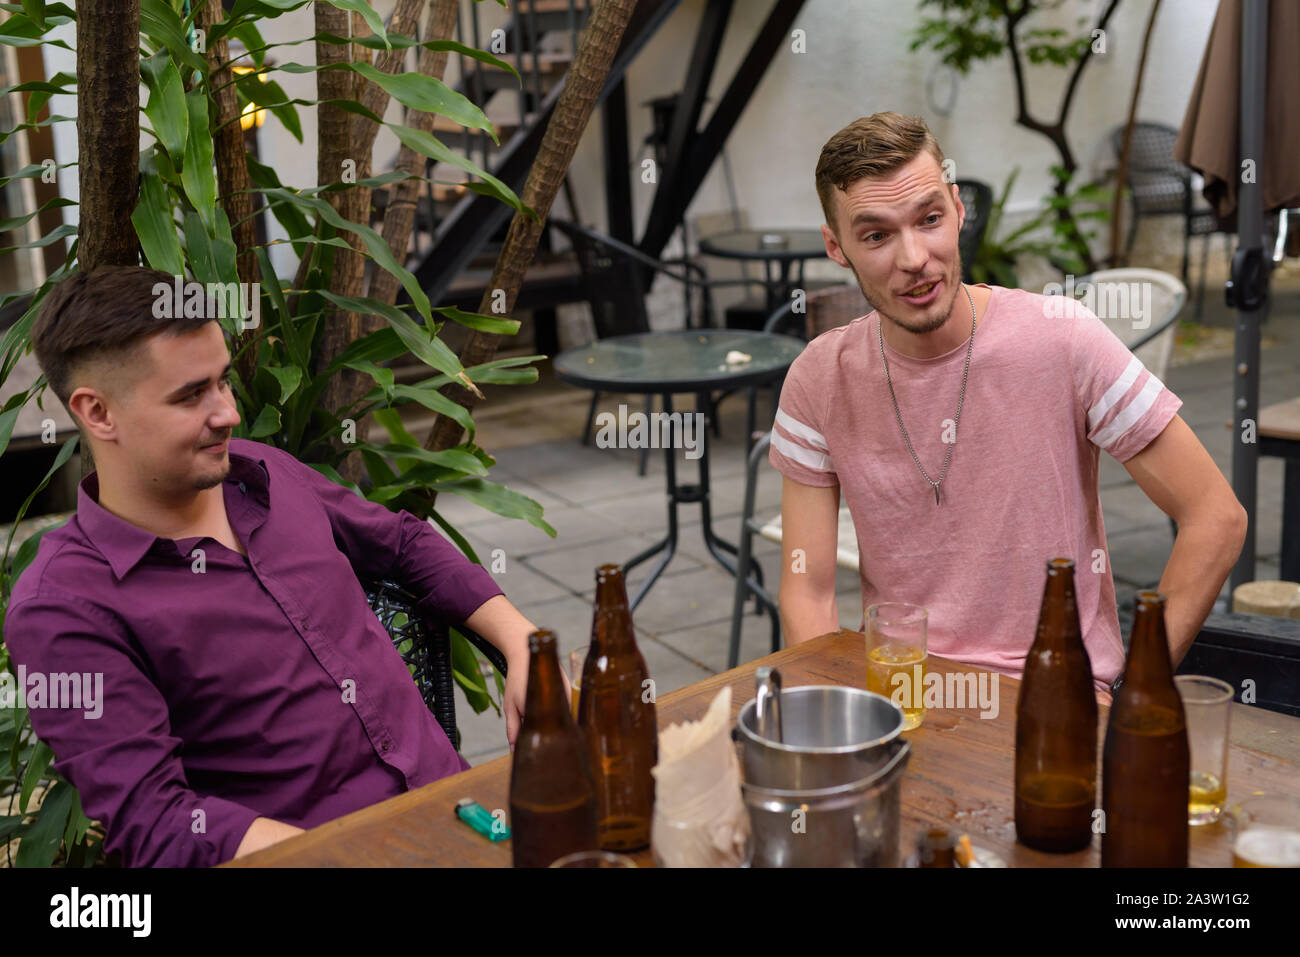 Gruppe von Männern im Freien sitzen und Bier trinken. Stockfoto